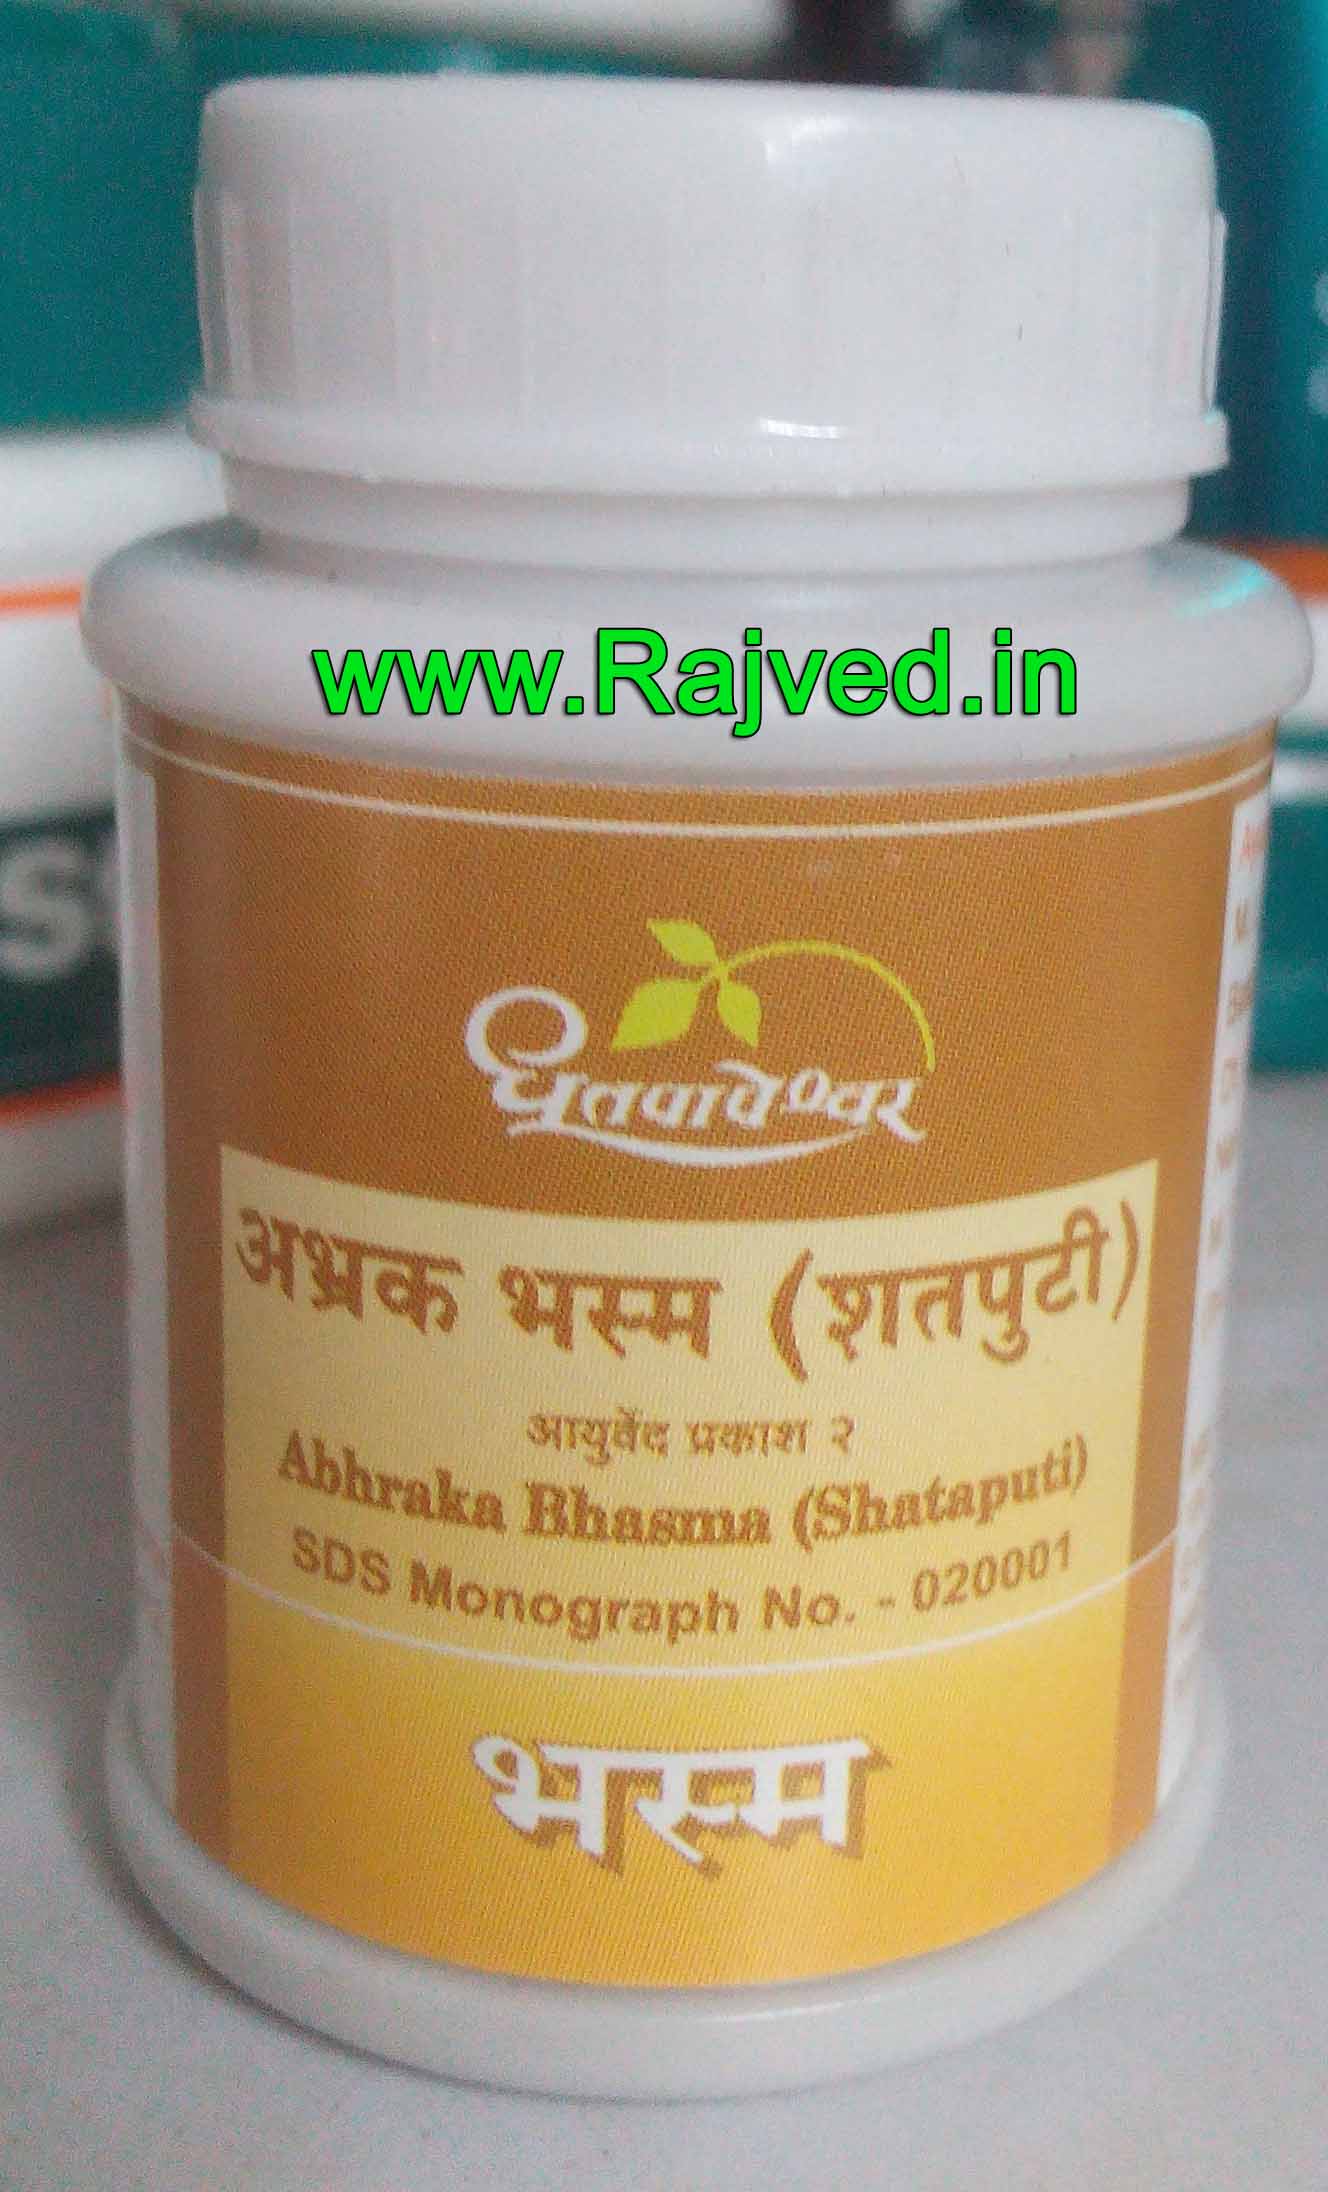 abhraka bhasma shataputi 250gm upto 20% off shree dhootpapeshwar panvel